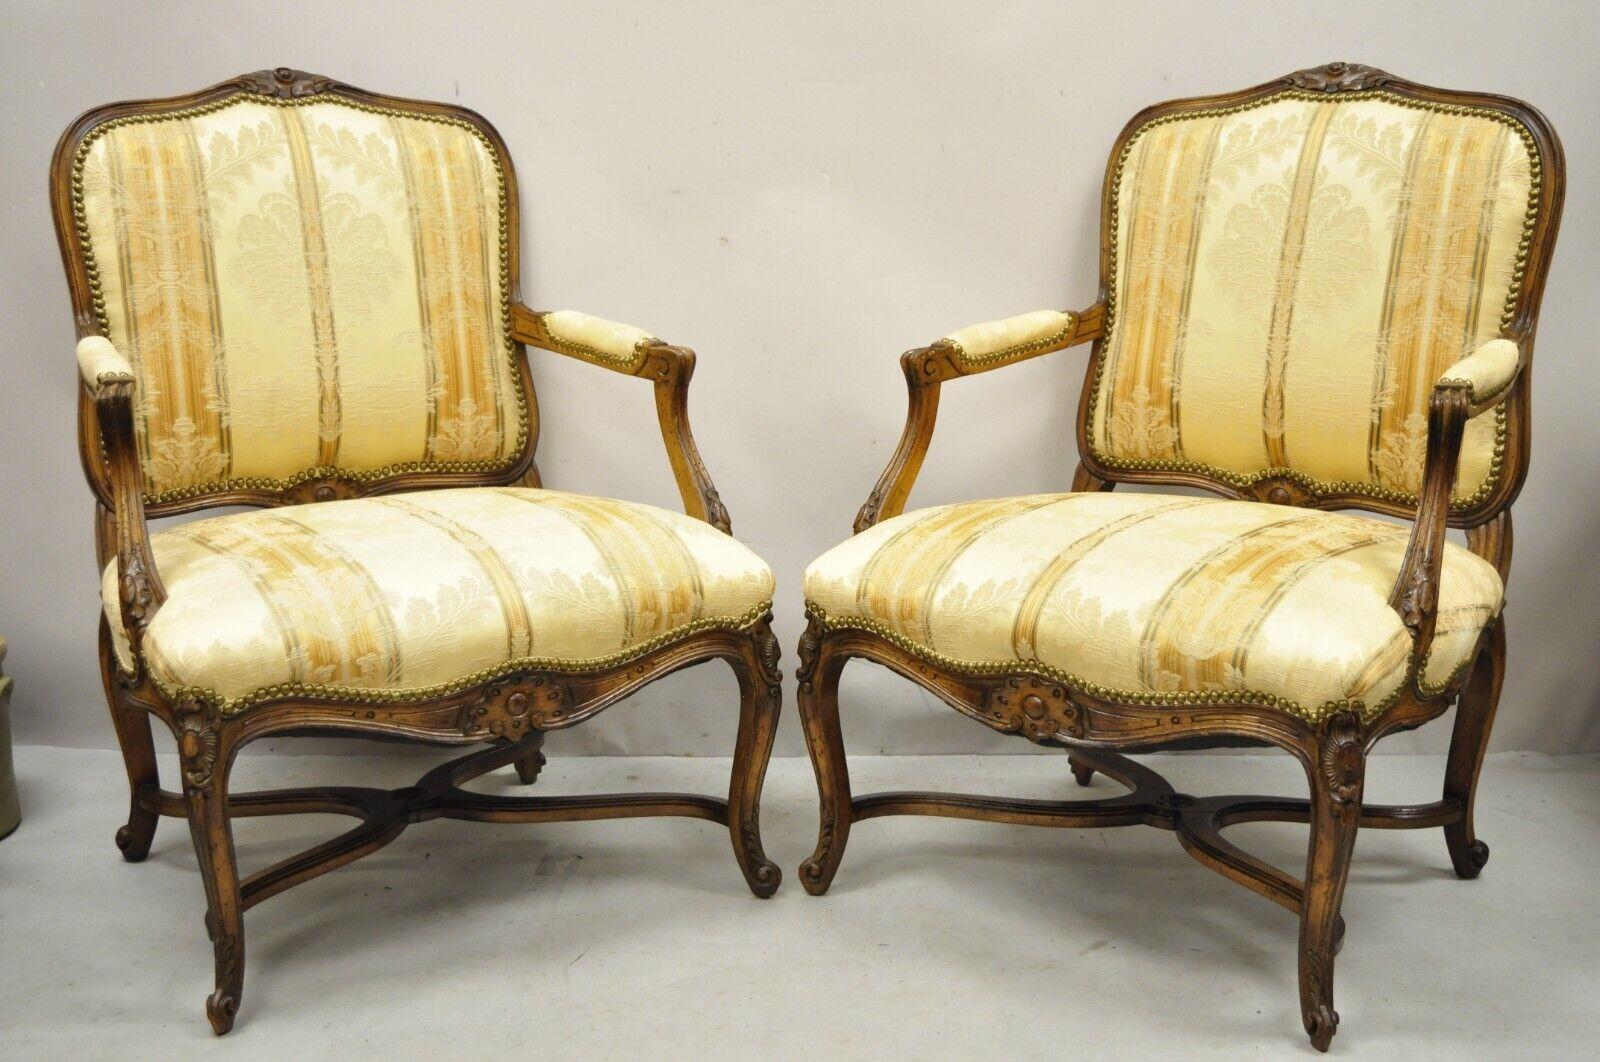 Vintage French Provincial Louis XV Country Style Lounge Chairs - ein Paar. Artikel verfügt über ein Kreuz Bahre Basis, beige Blumendruck Polsterung, Massivholzrahmen, gepolsterte Armlehnen, distressed Finish, Cabriole Beine, sehr schöne Vintage